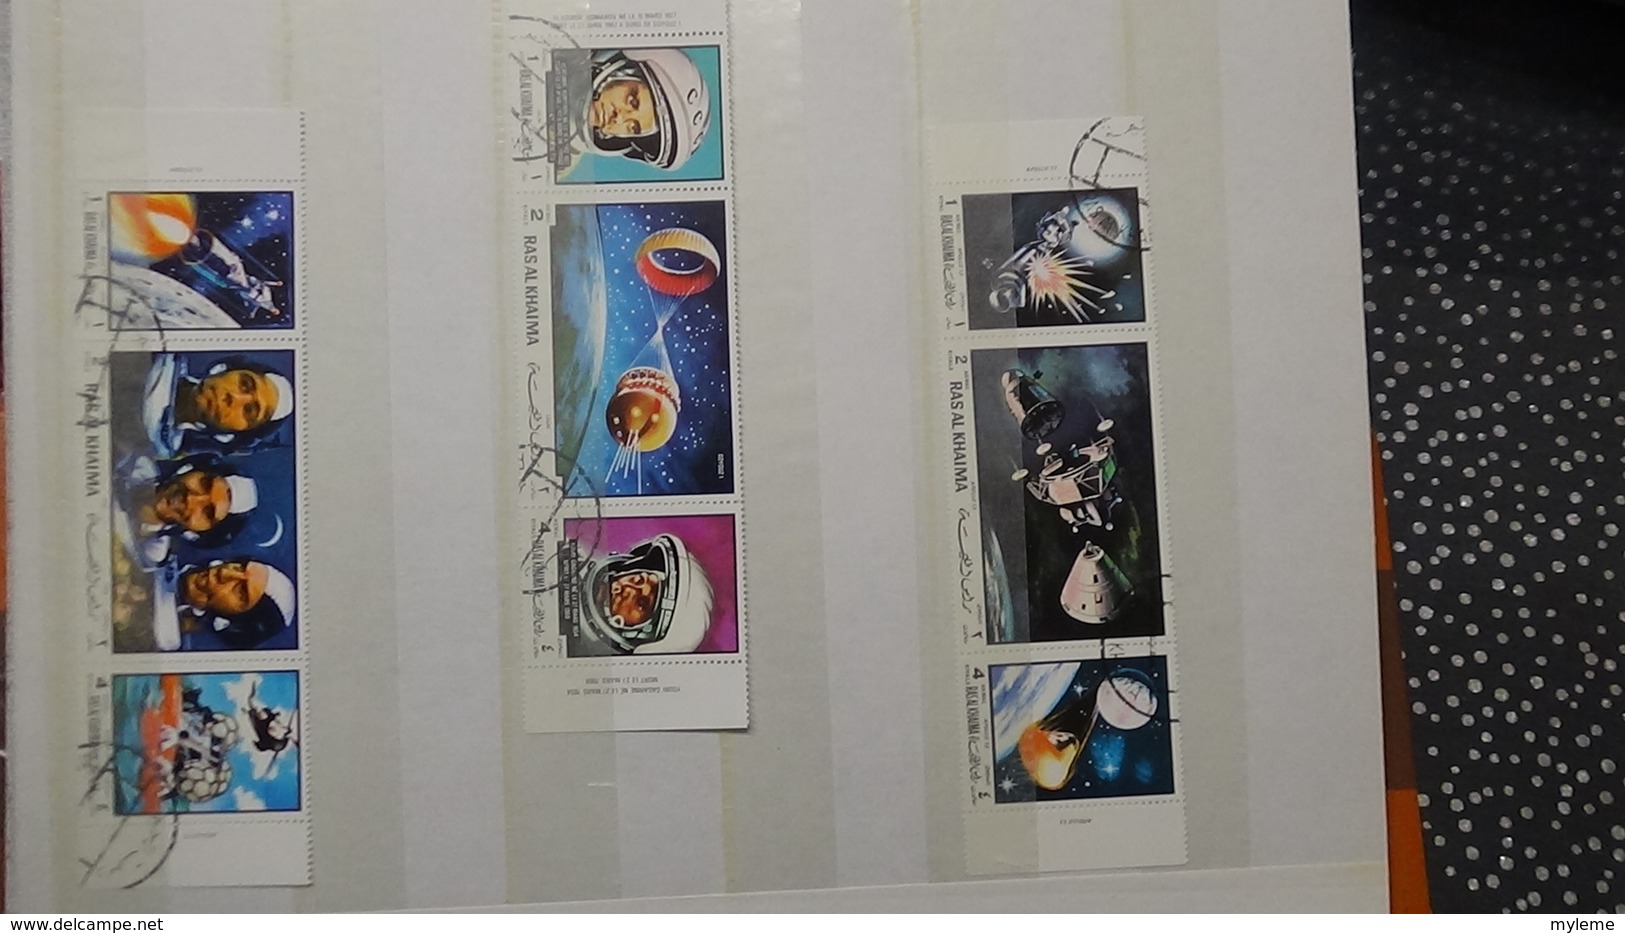 B378 Collection timbres et blocs oblitérés. Thématique l'espace. A saisir !!!